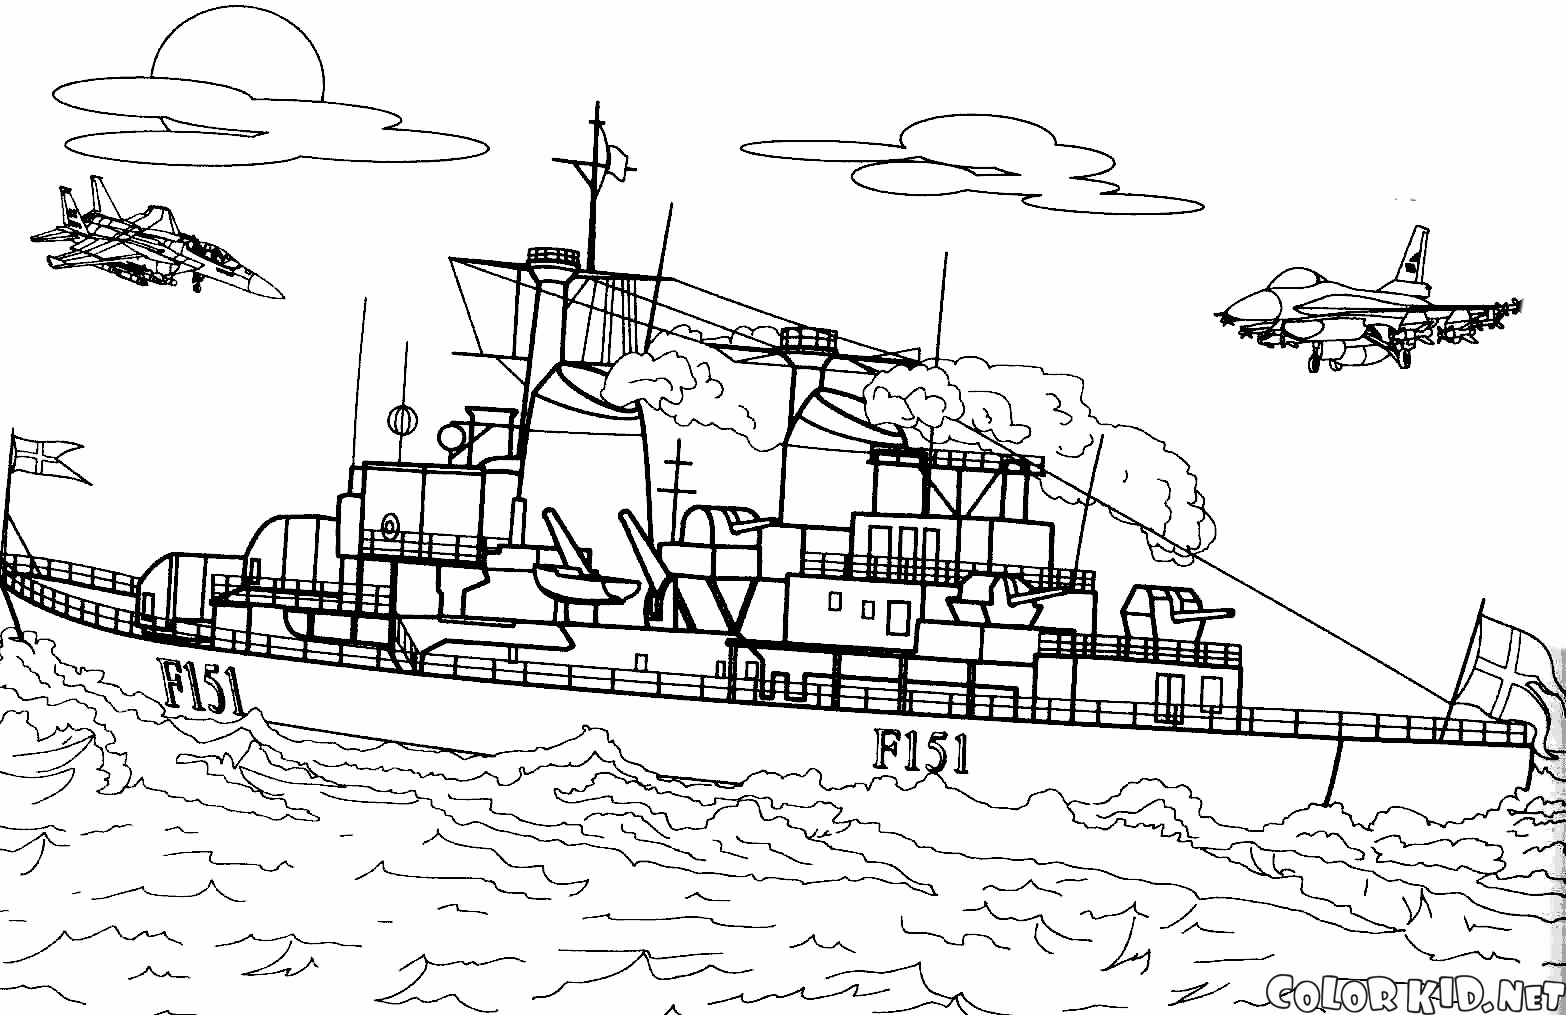 Danish frigate